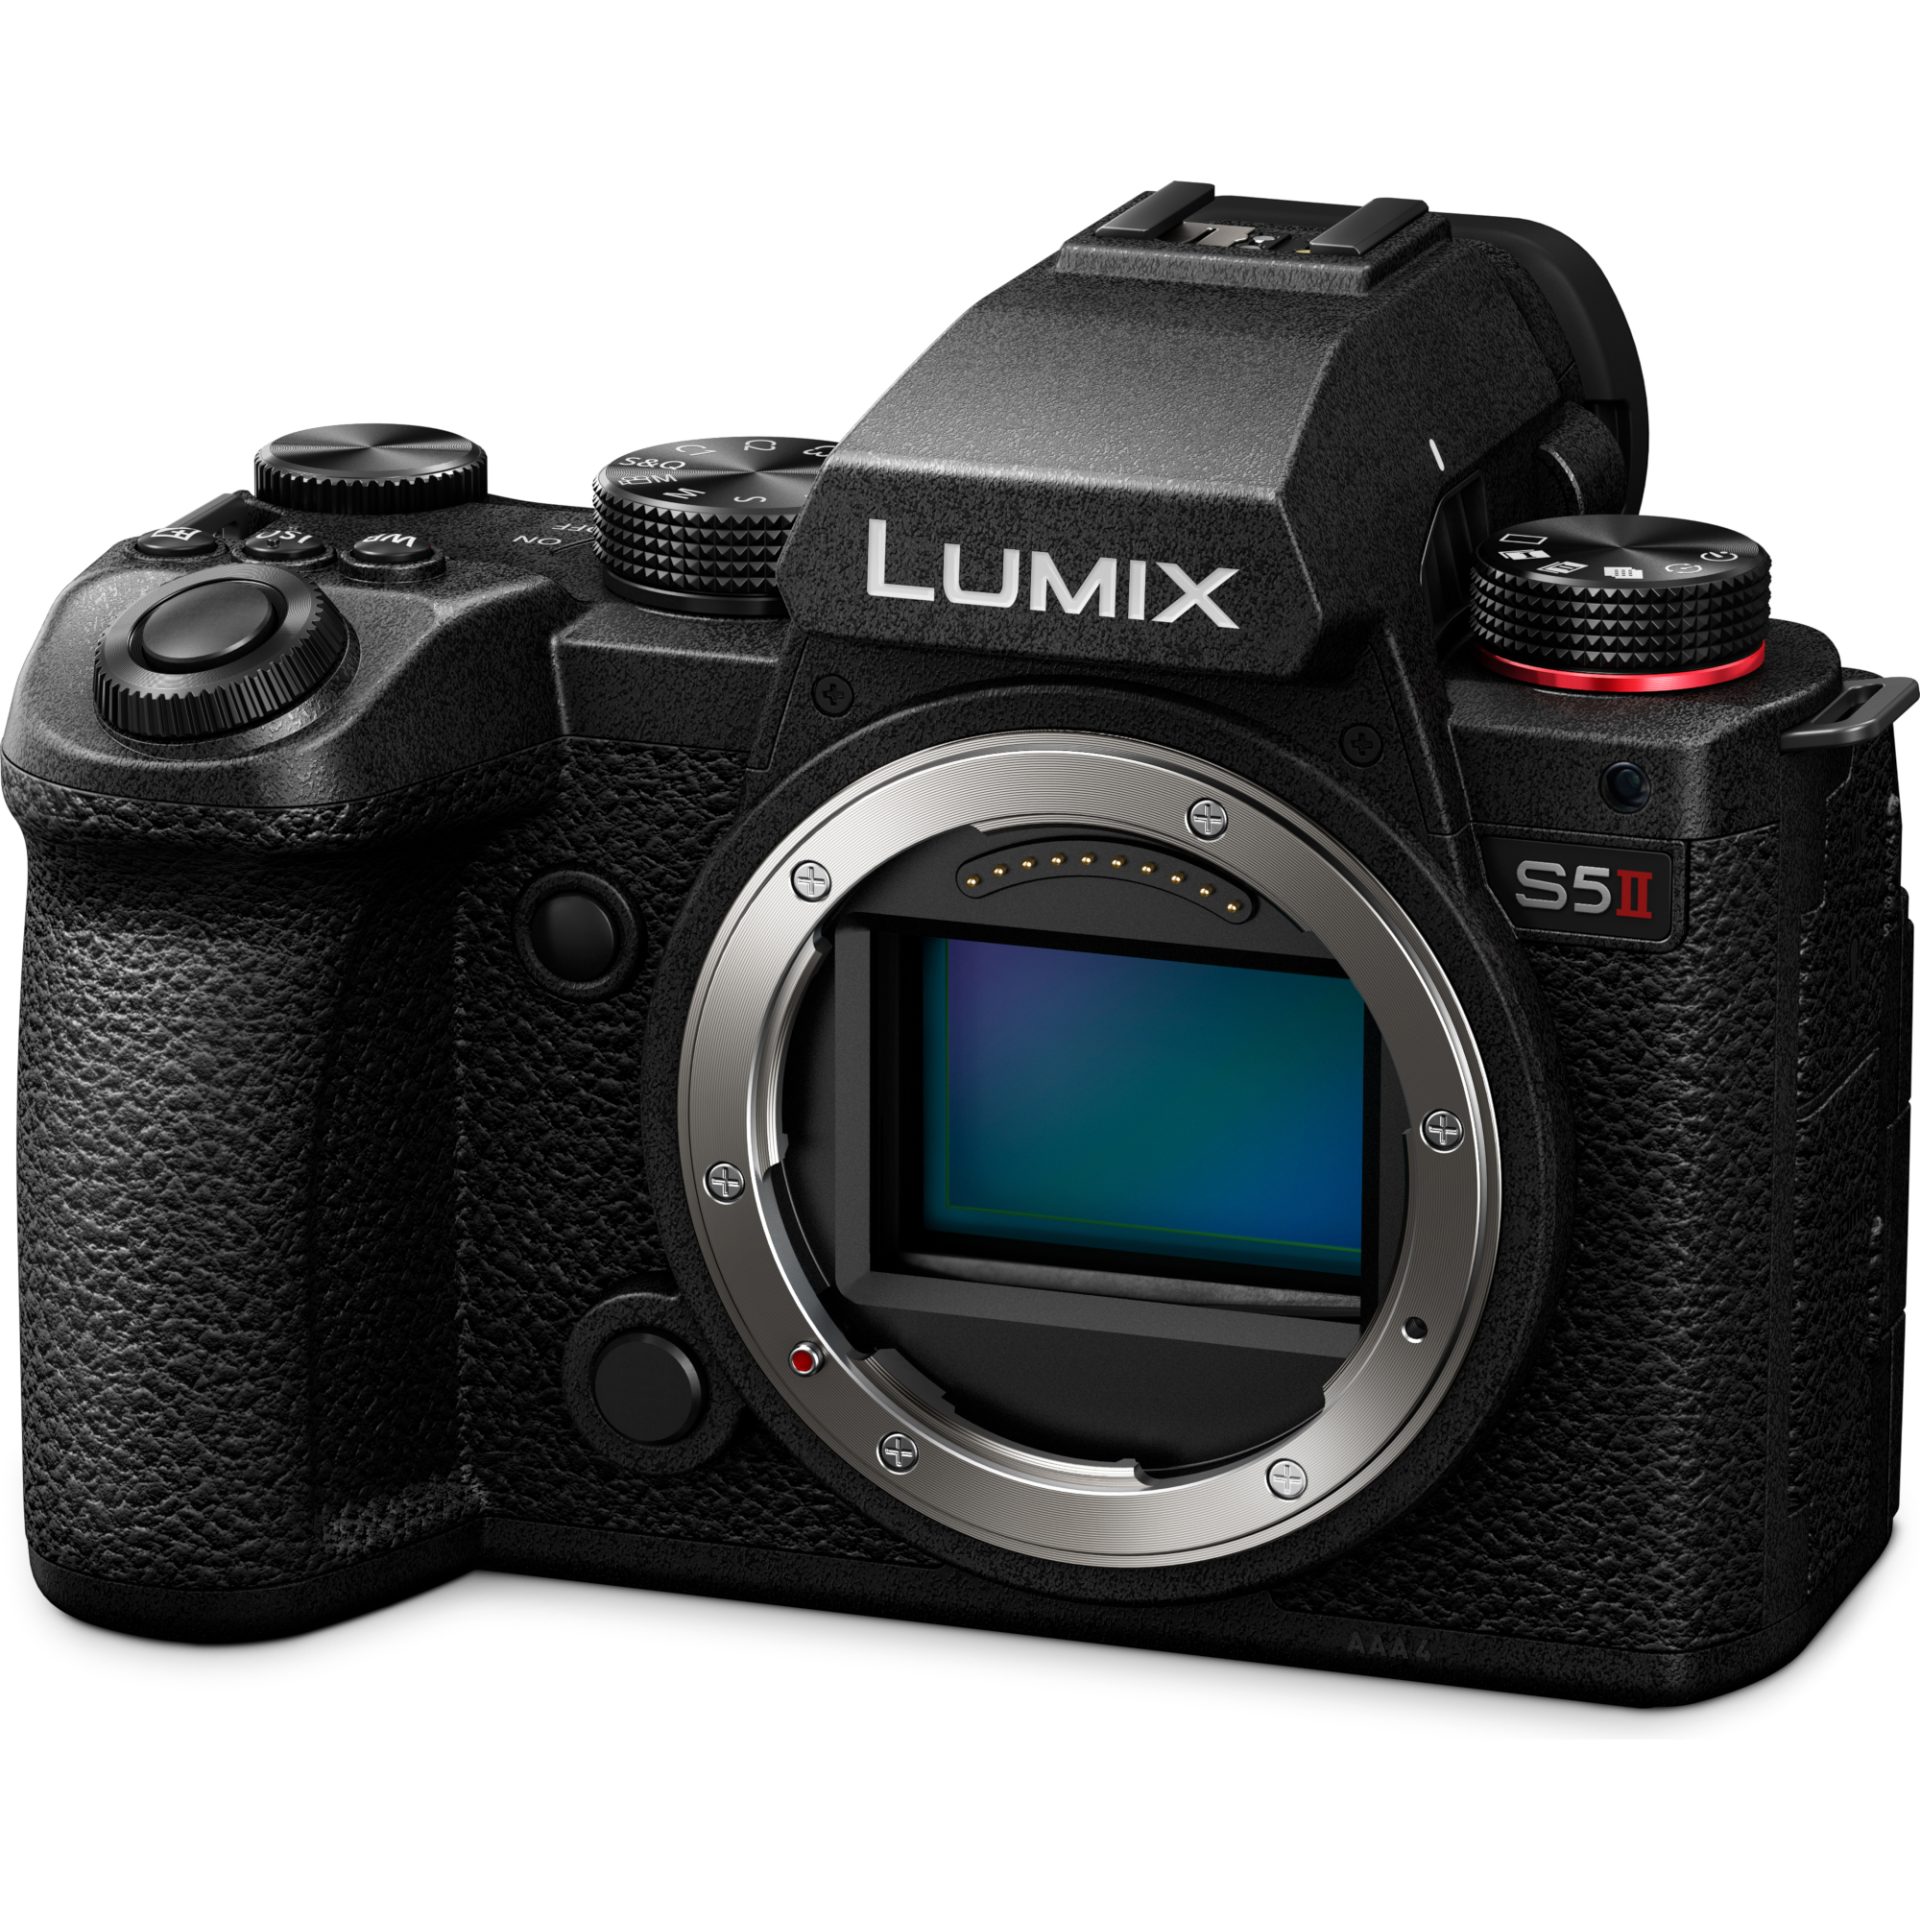 Zdjęcia - Aparat fotograficzny Panasonic DC-S5M2 Lumix pełnoklatkowy aparat bezlusterkowy (matryca CMOS 2 